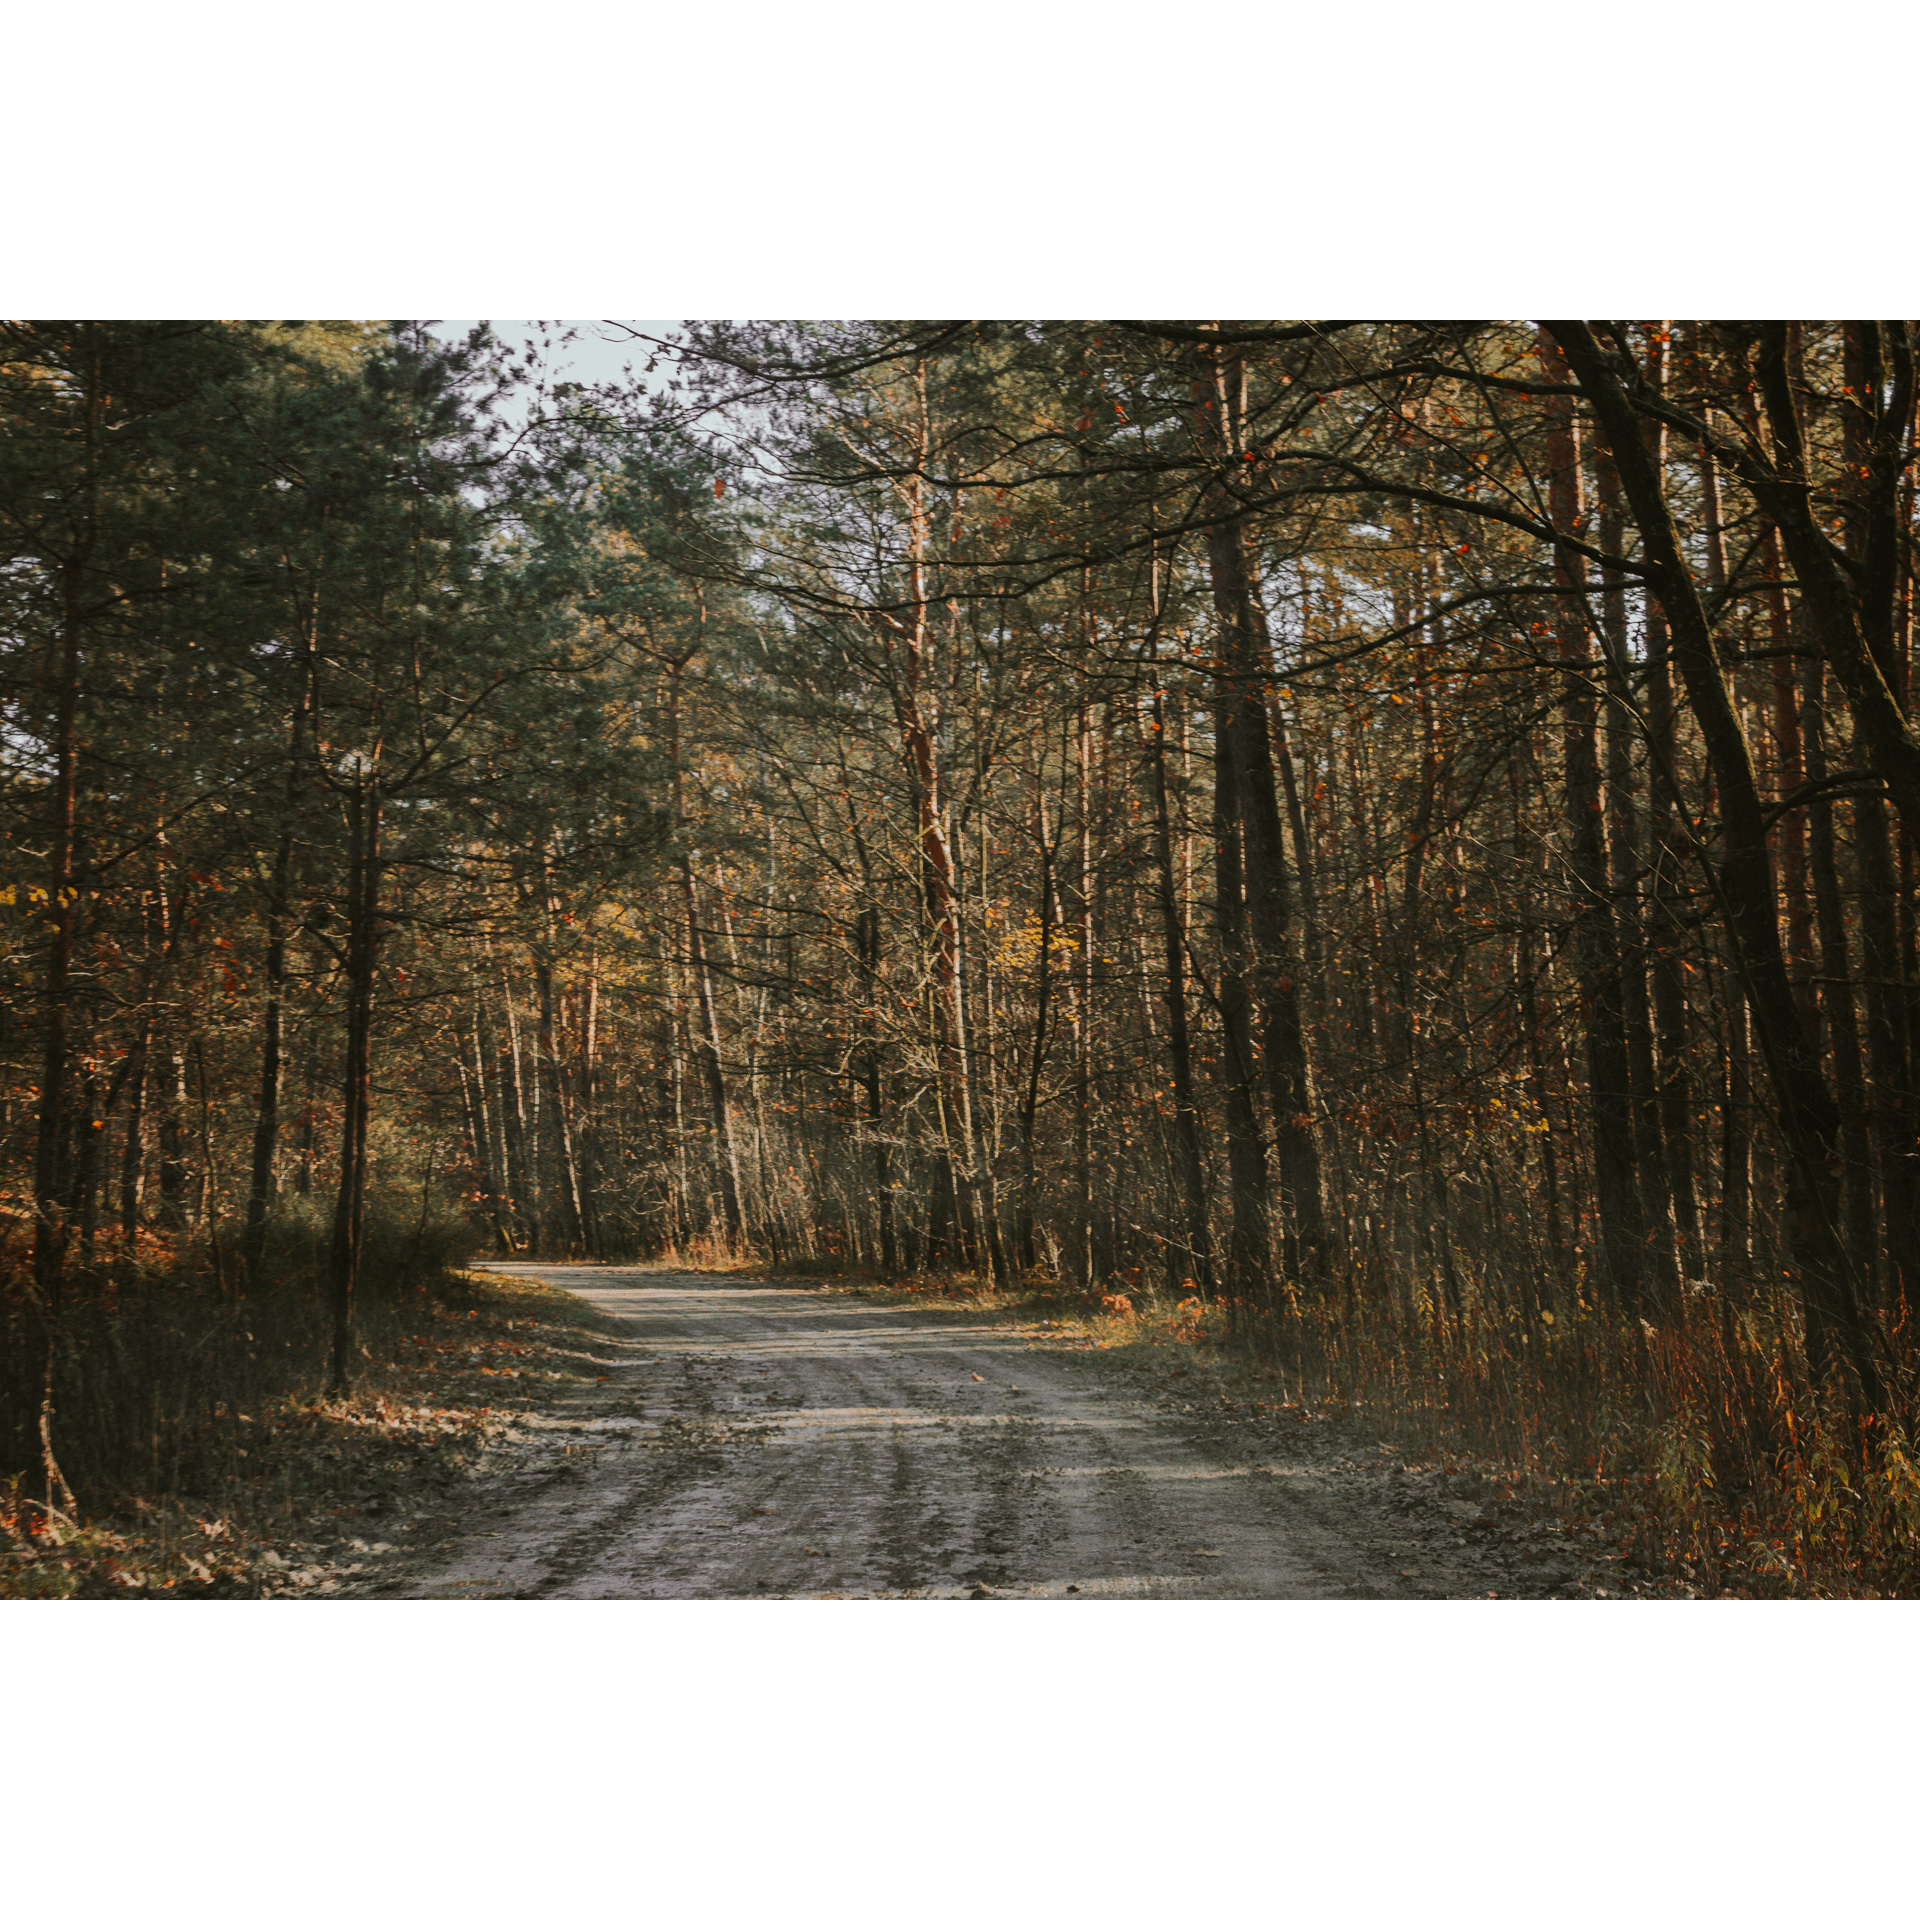 Piaszczysta droga prowadząca przez las mieszany